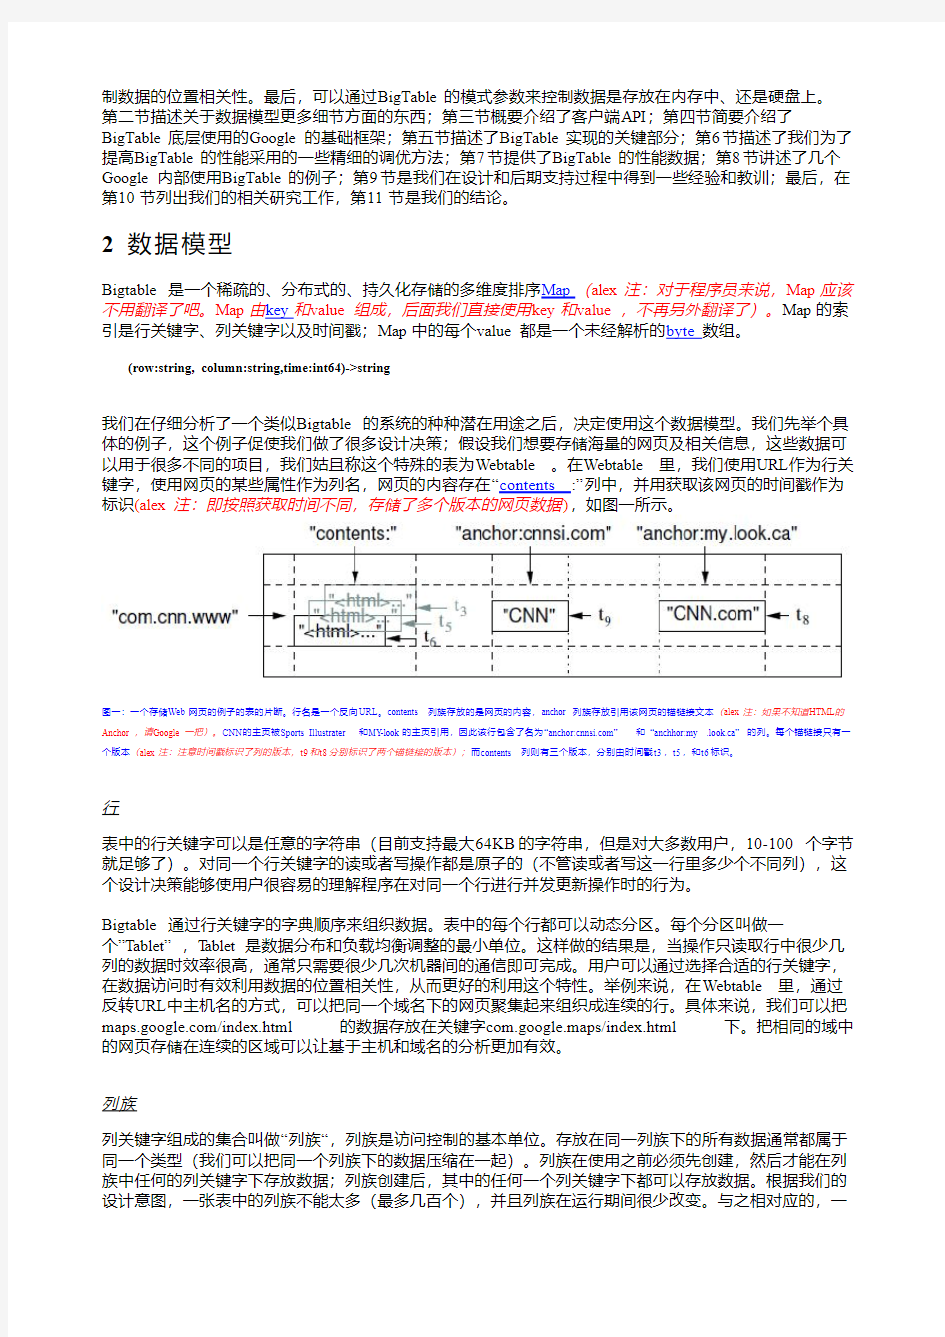 Google三大论文 中文版